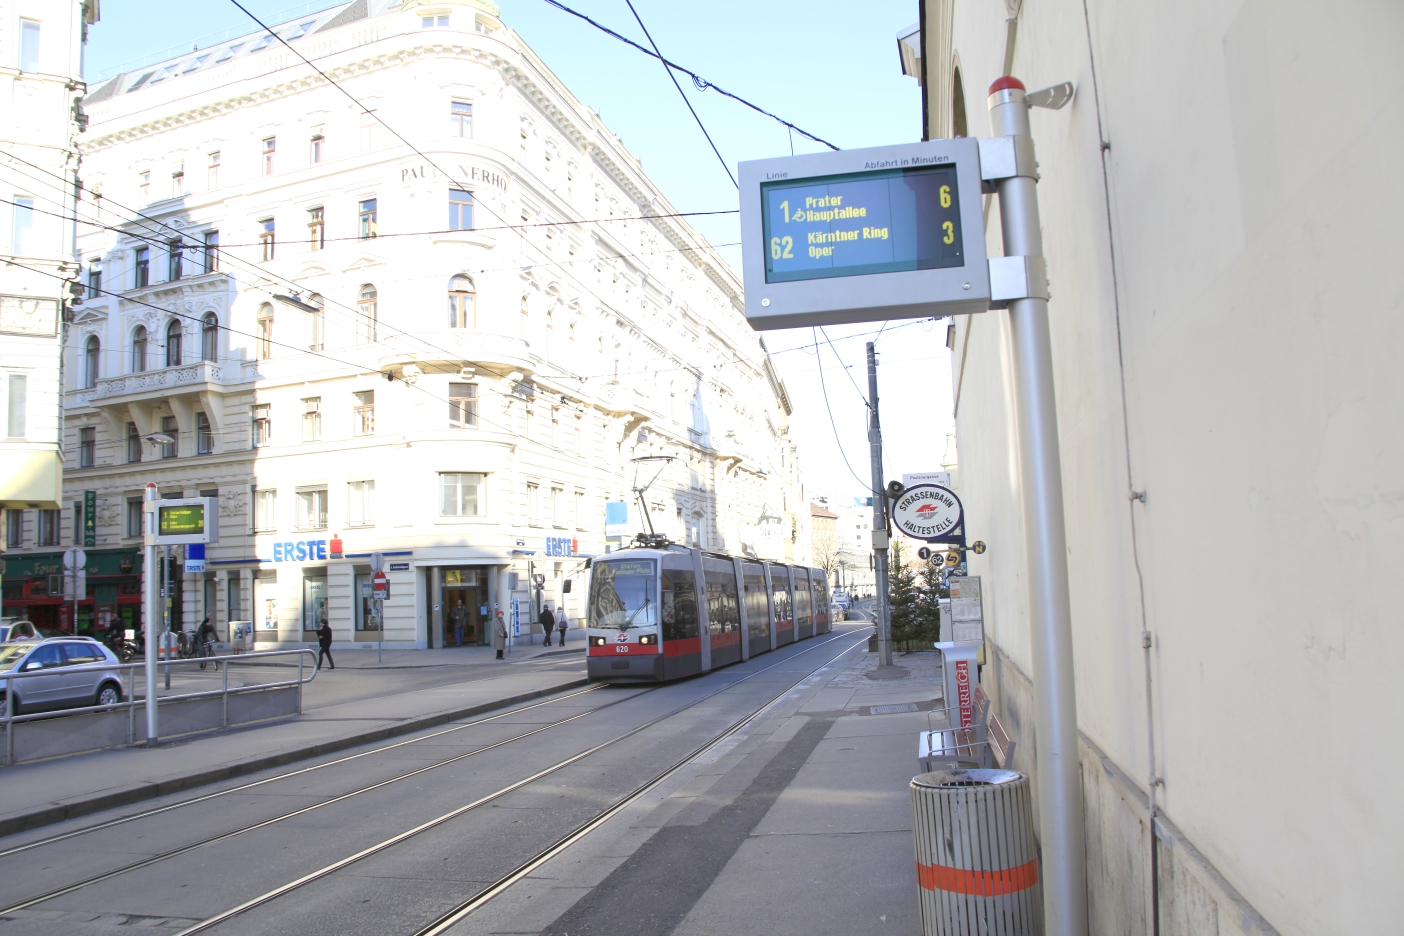 Station Paulanergasse Neue Haltestellenanzeige für die Linien1 und 62 im Hintergrund ein Ulf der Linie 1